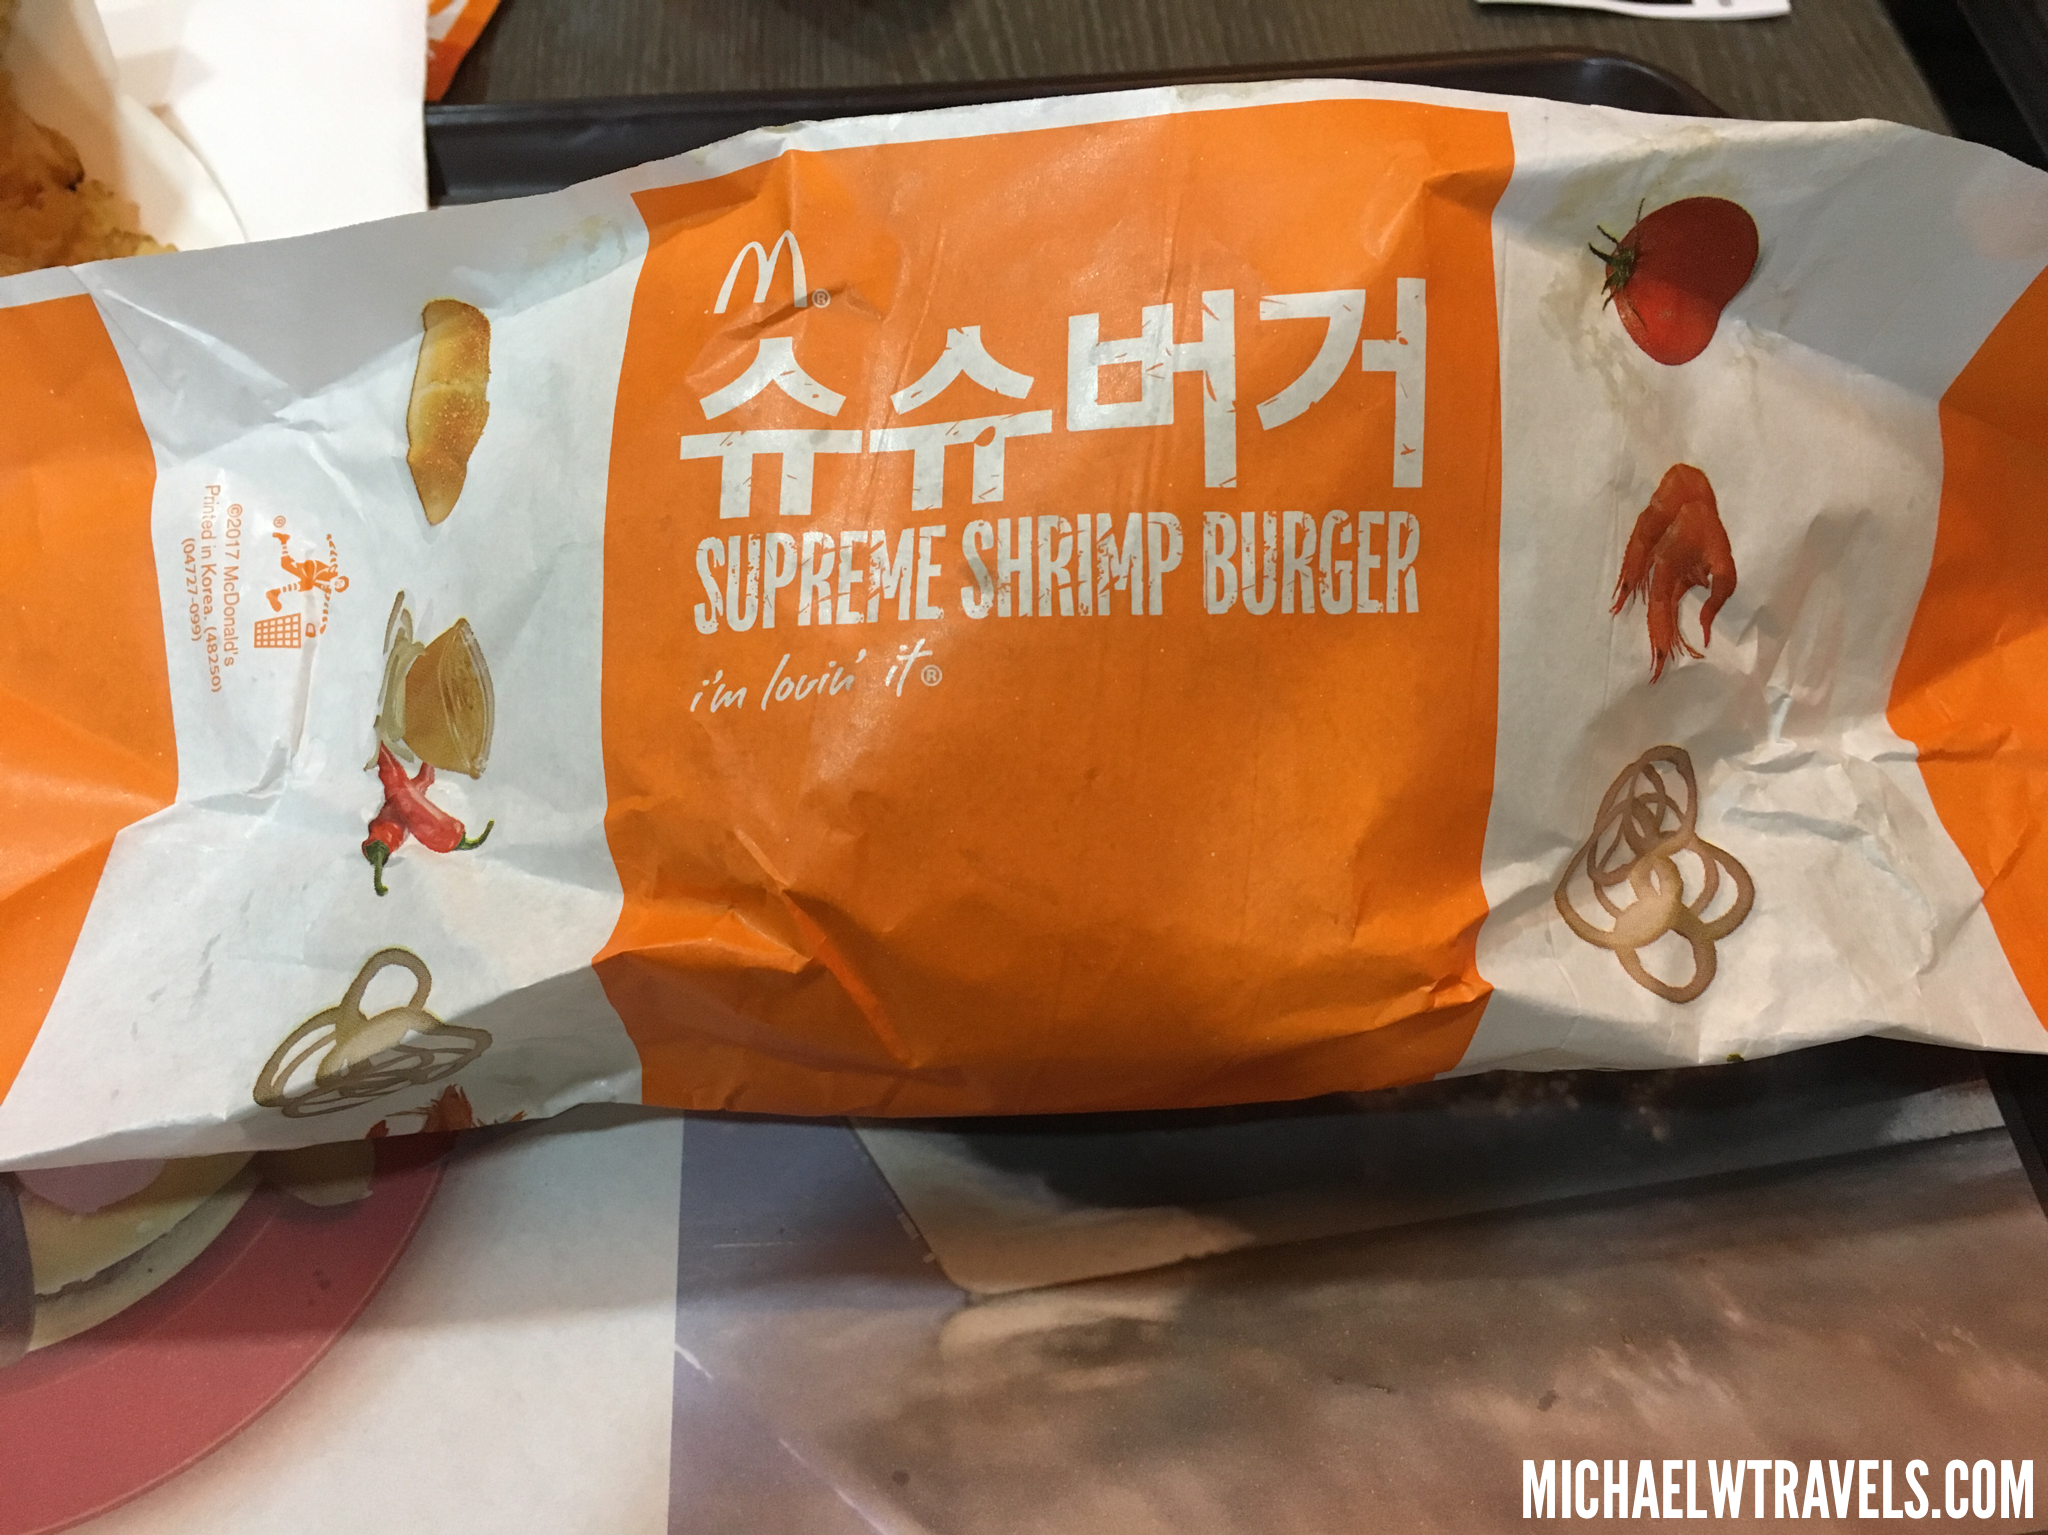 McDonald's pushes shrimp burger in Korea - The Korea Times